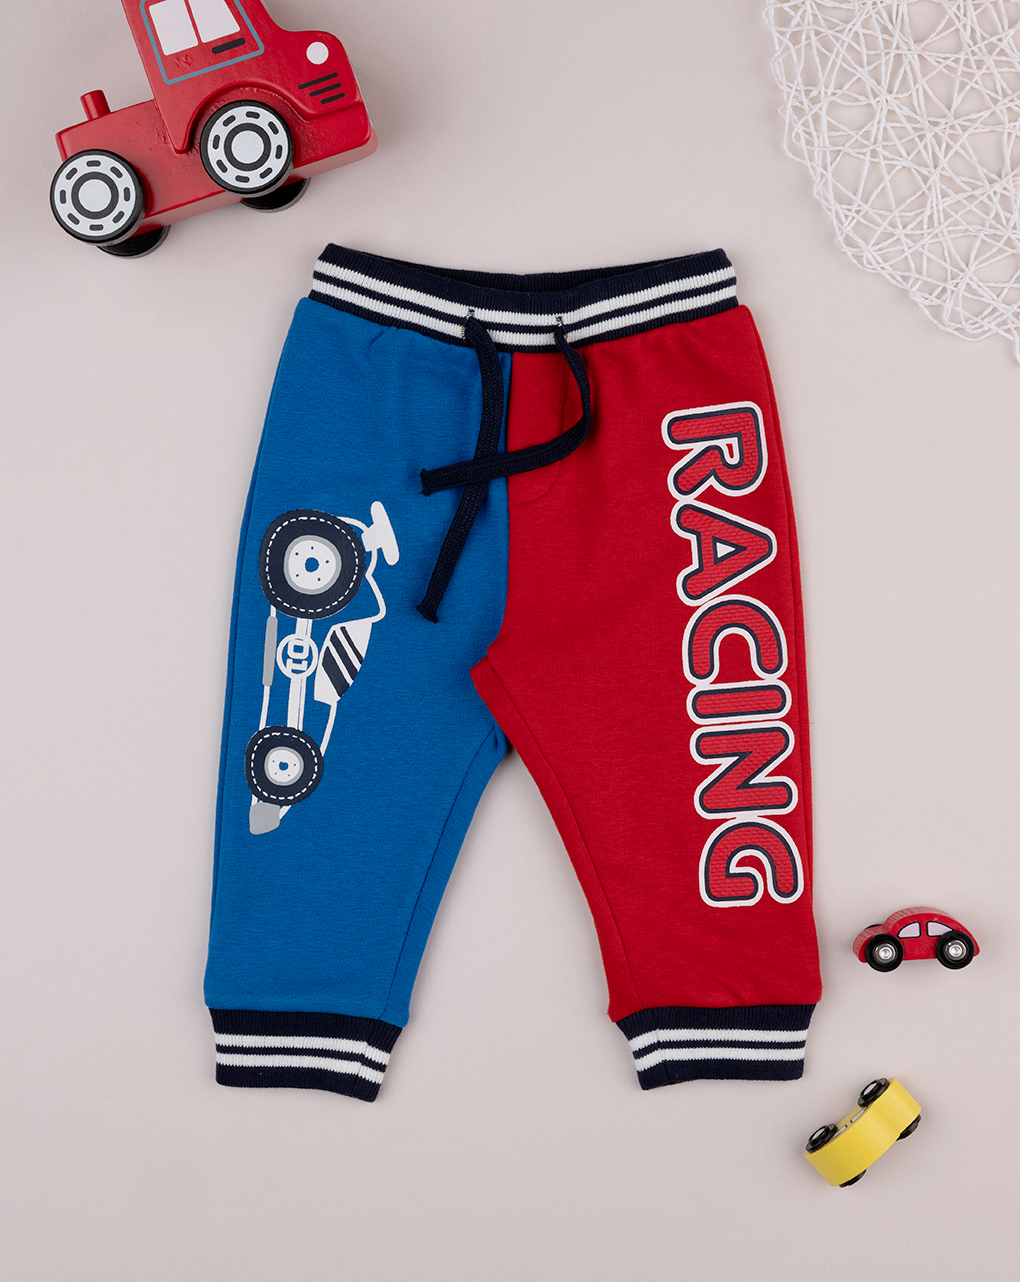 Pantalones informales de rizo francés para niños azul oscuro y rojo escarlata - Prénatal